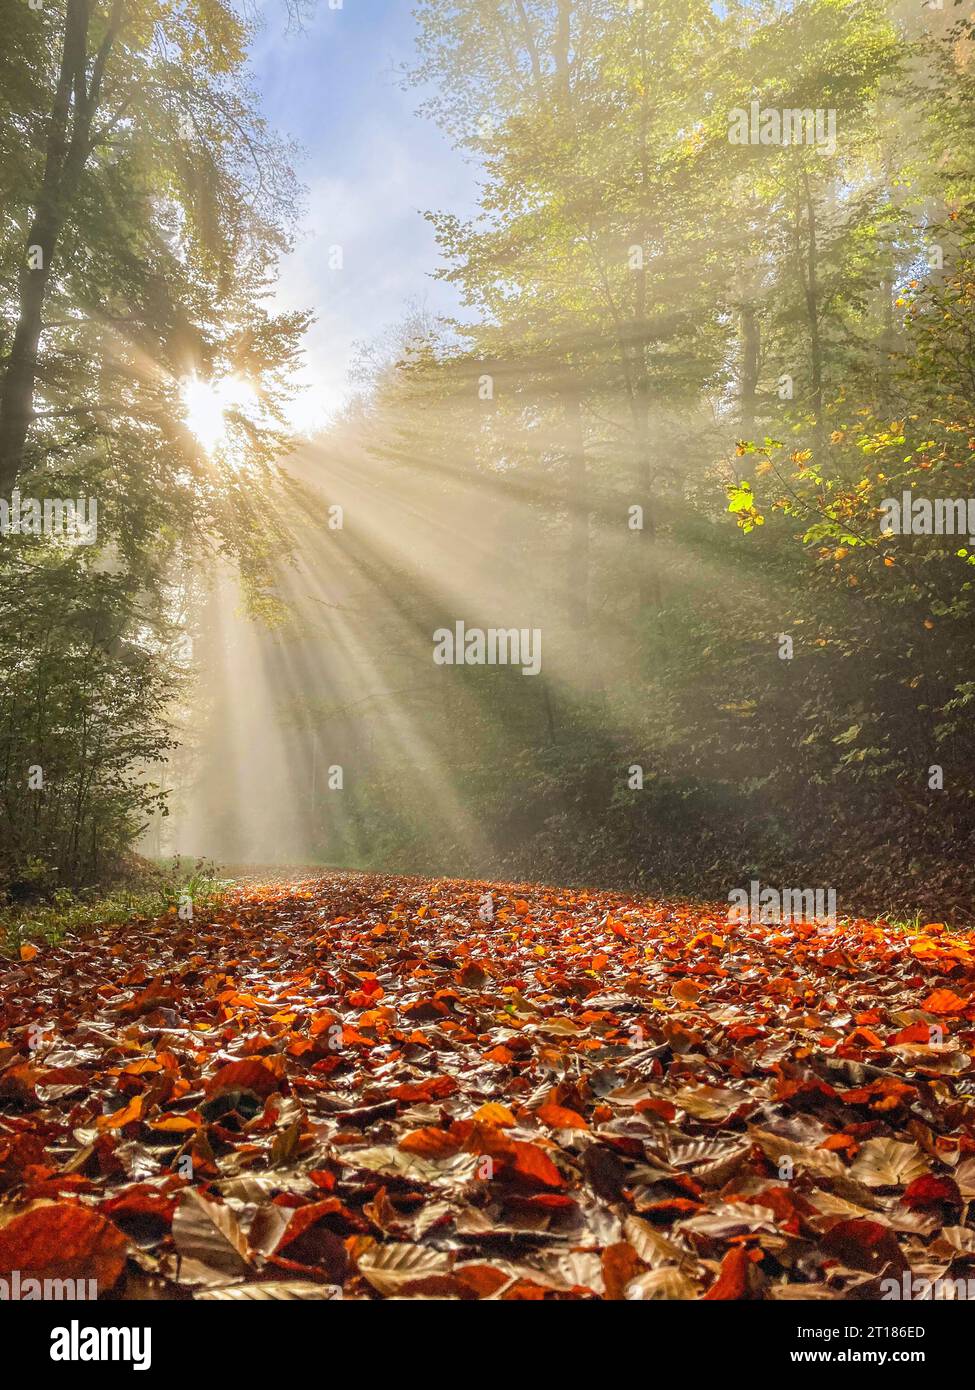 Rayons du soleil, faisceau de lumière brillent à travers les arbres sur un chemin forestier, forêt boréale à feuilles persistantes. Canton d'Argovie, Suisse Banque D'Images